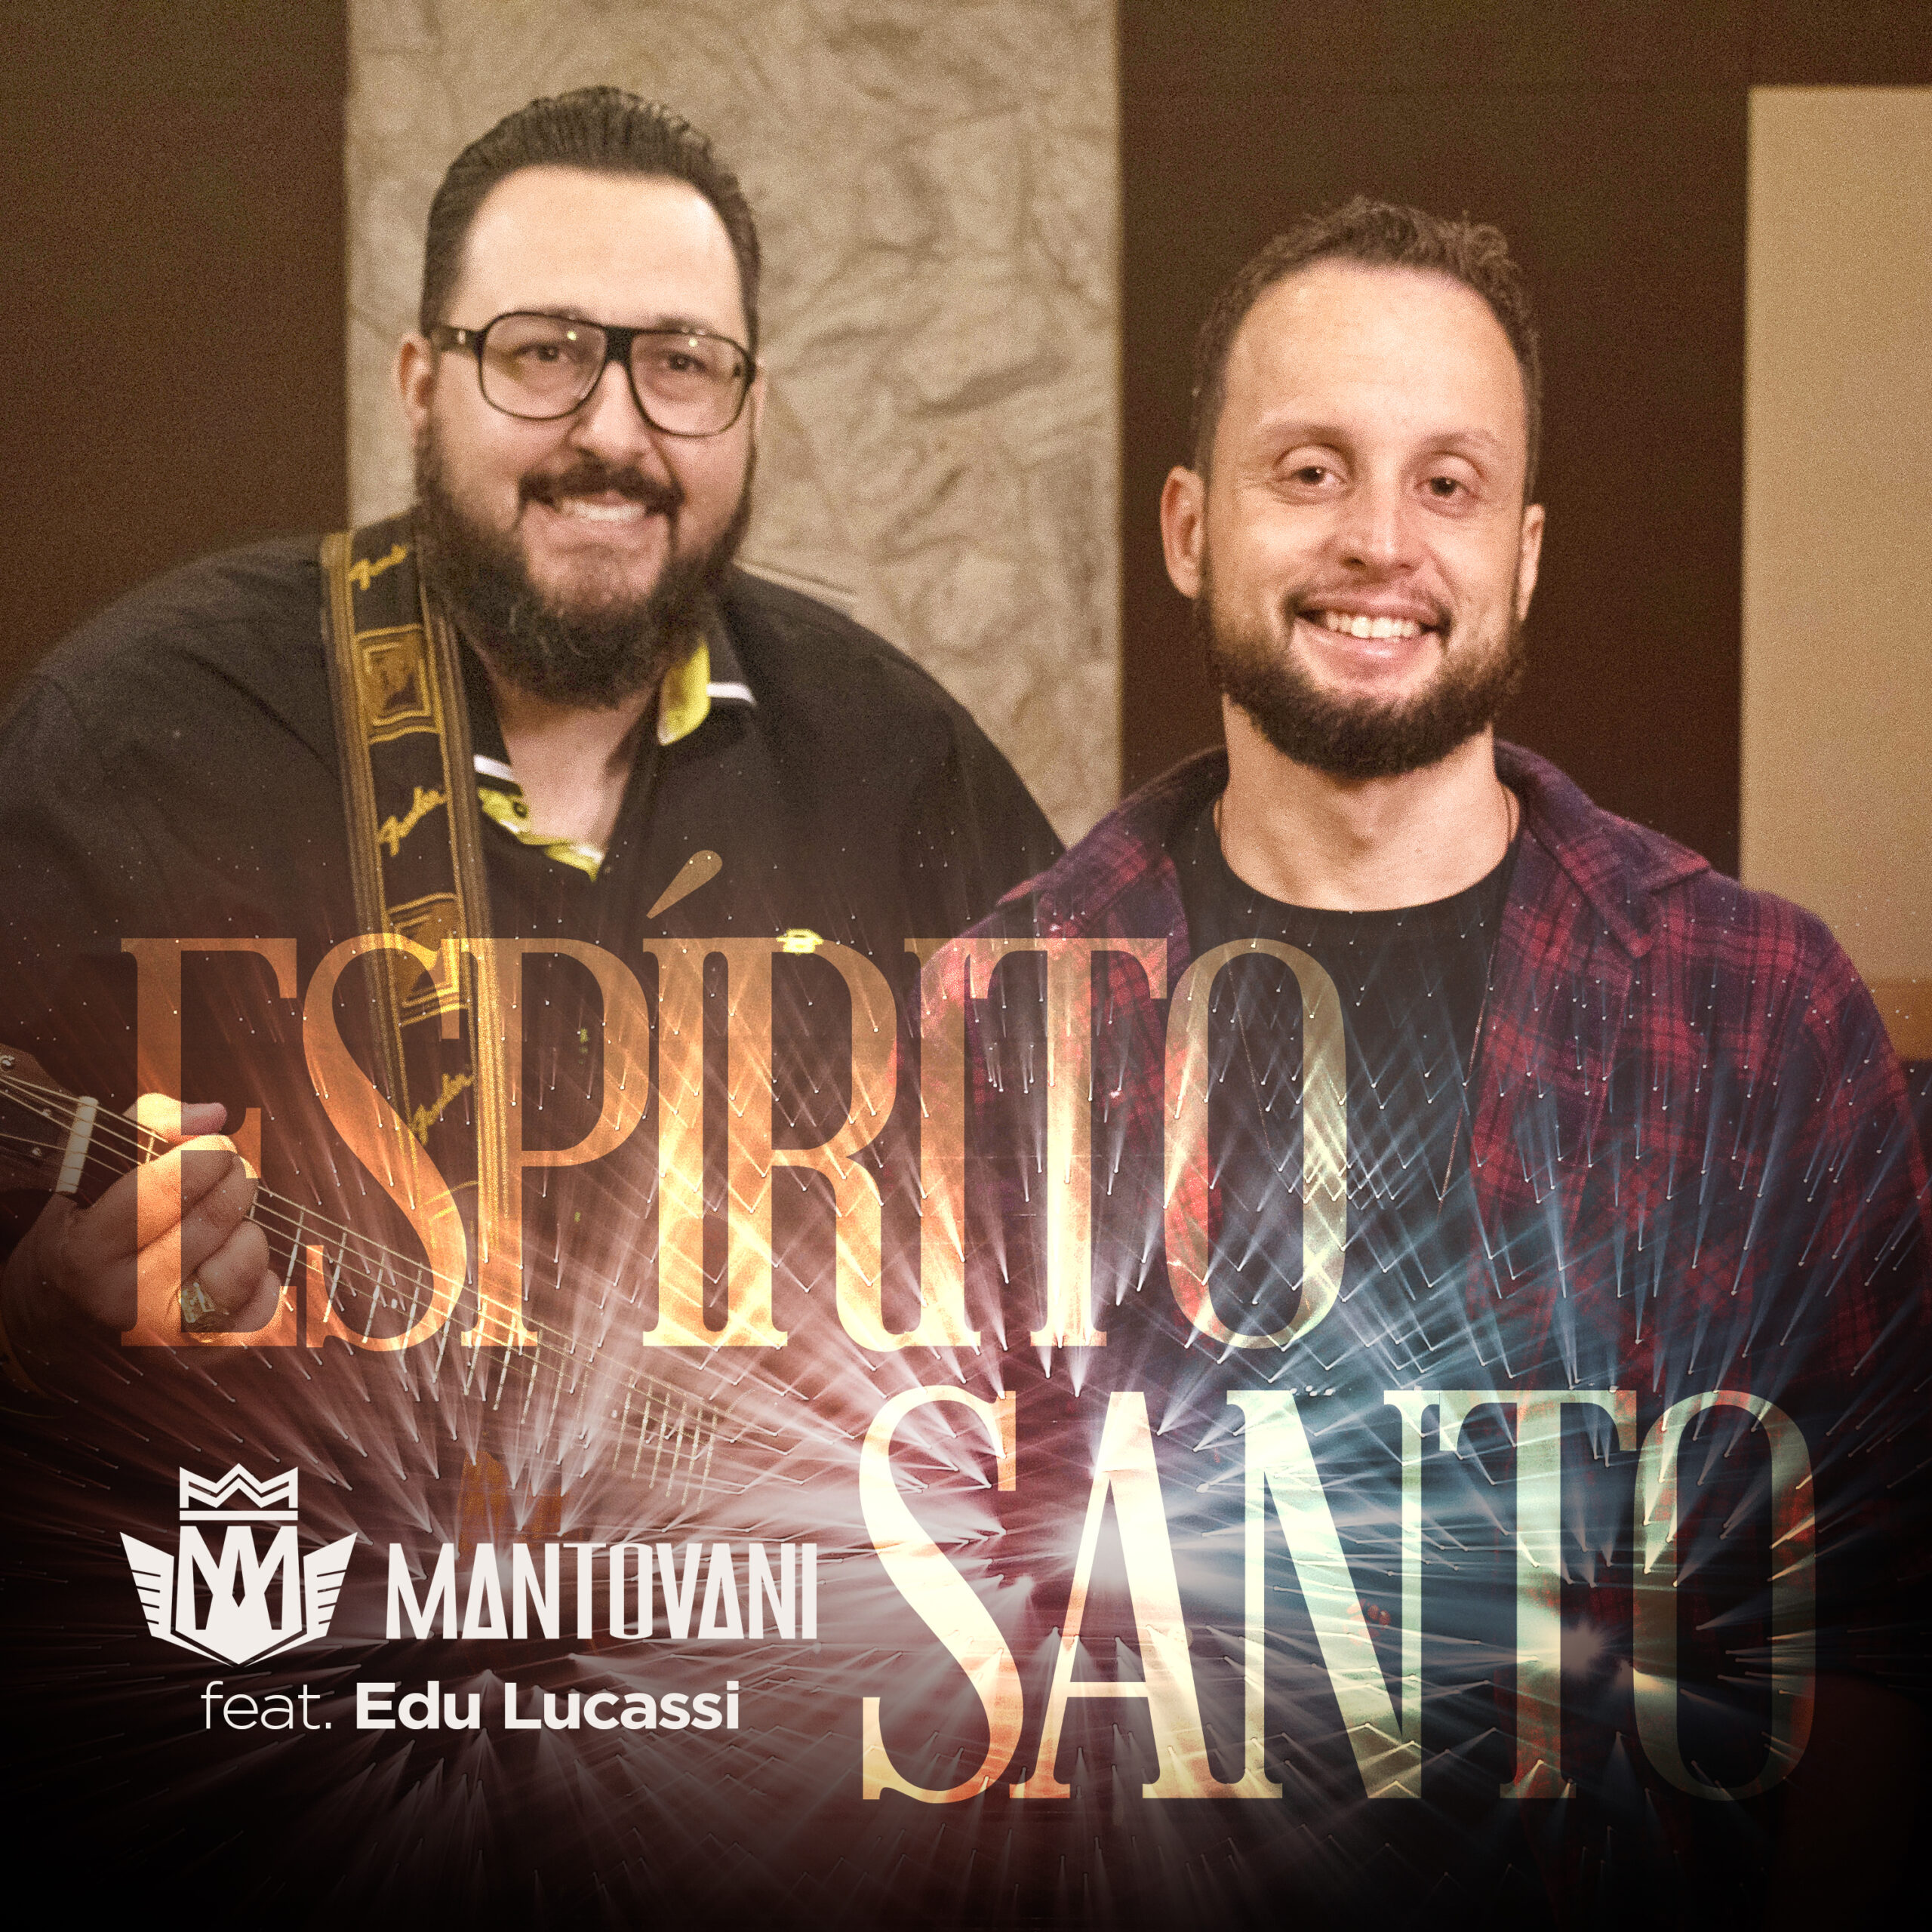 Mantovani lança single “Espírito Santo” com participação de Edu Lucassi